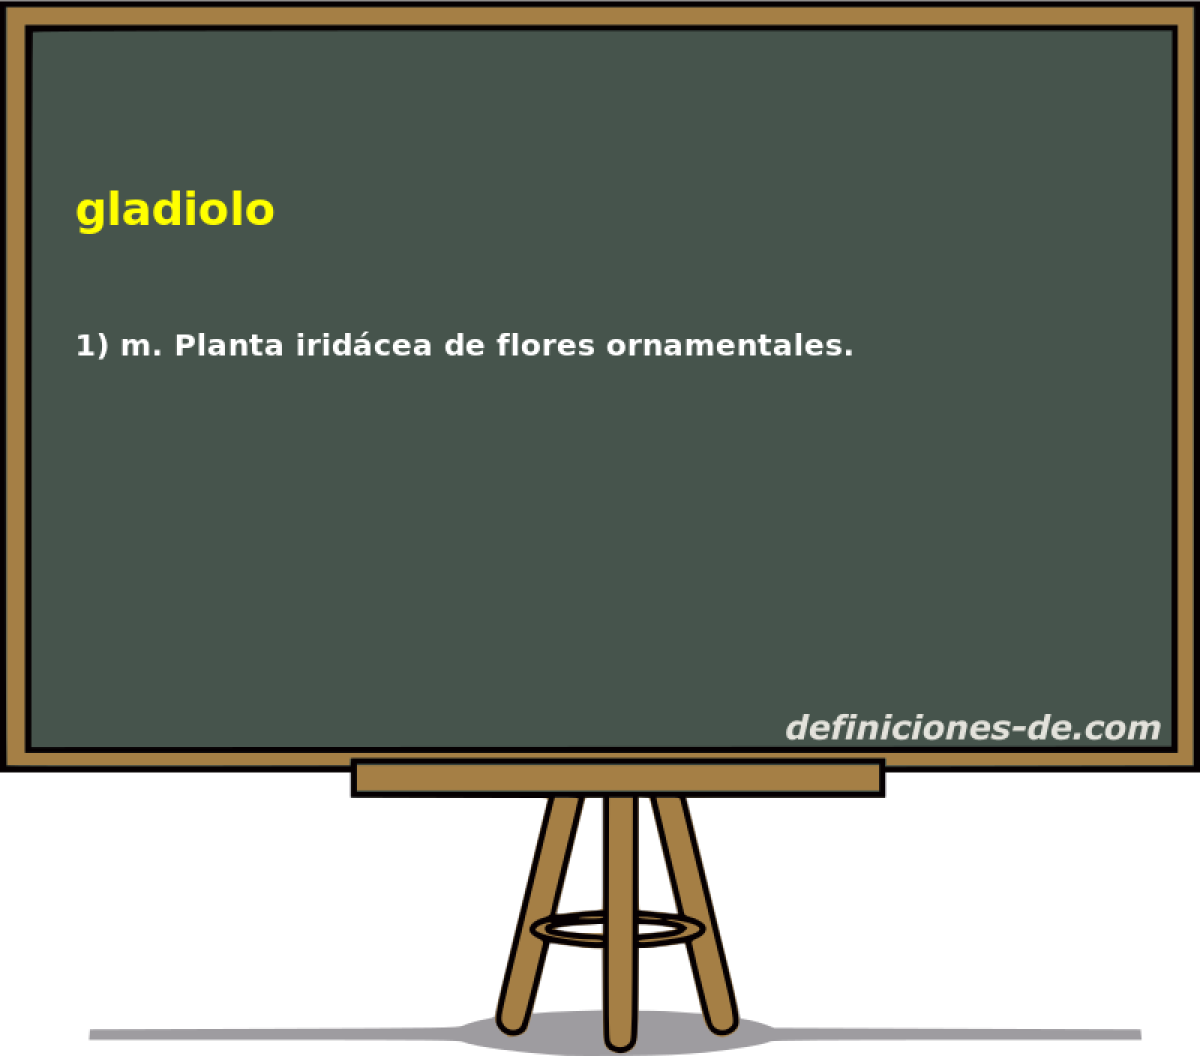 gladiolo 